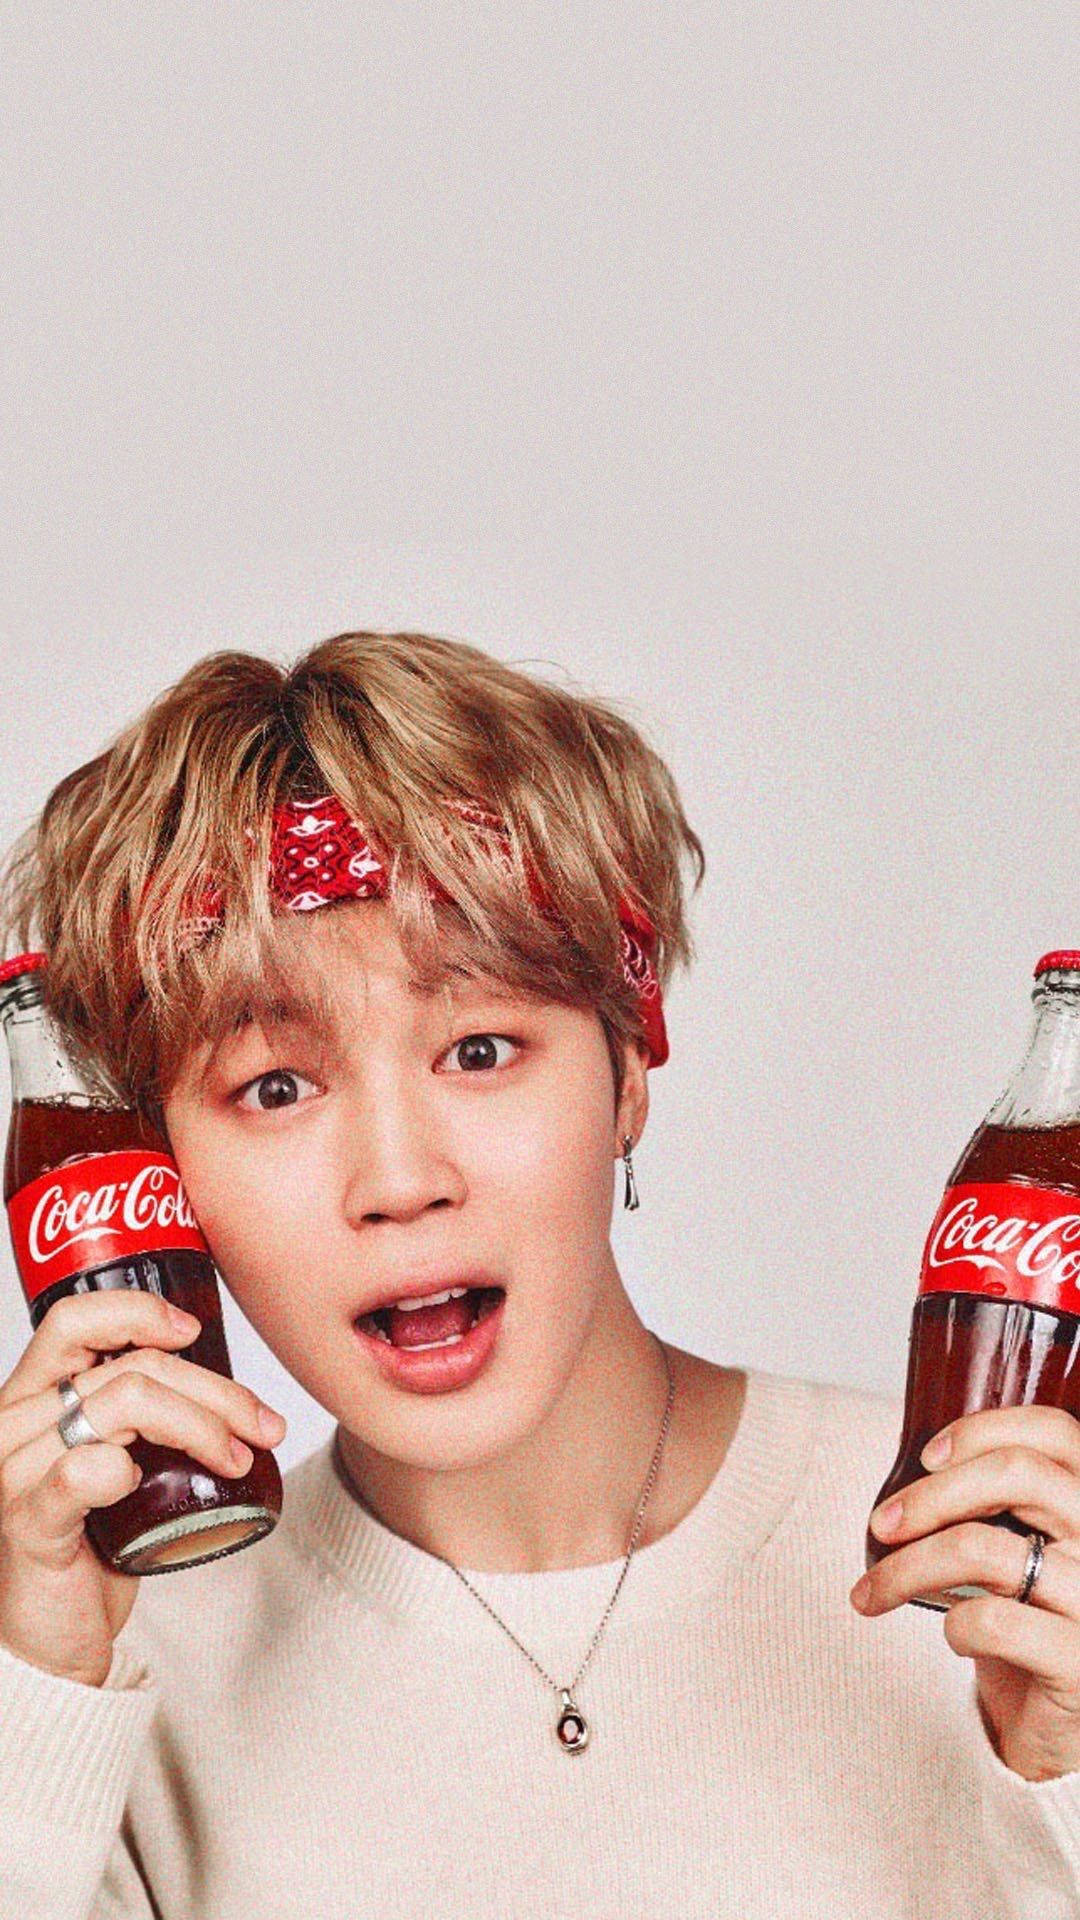 BTS Jimin For Coca-Cola Wallpaper